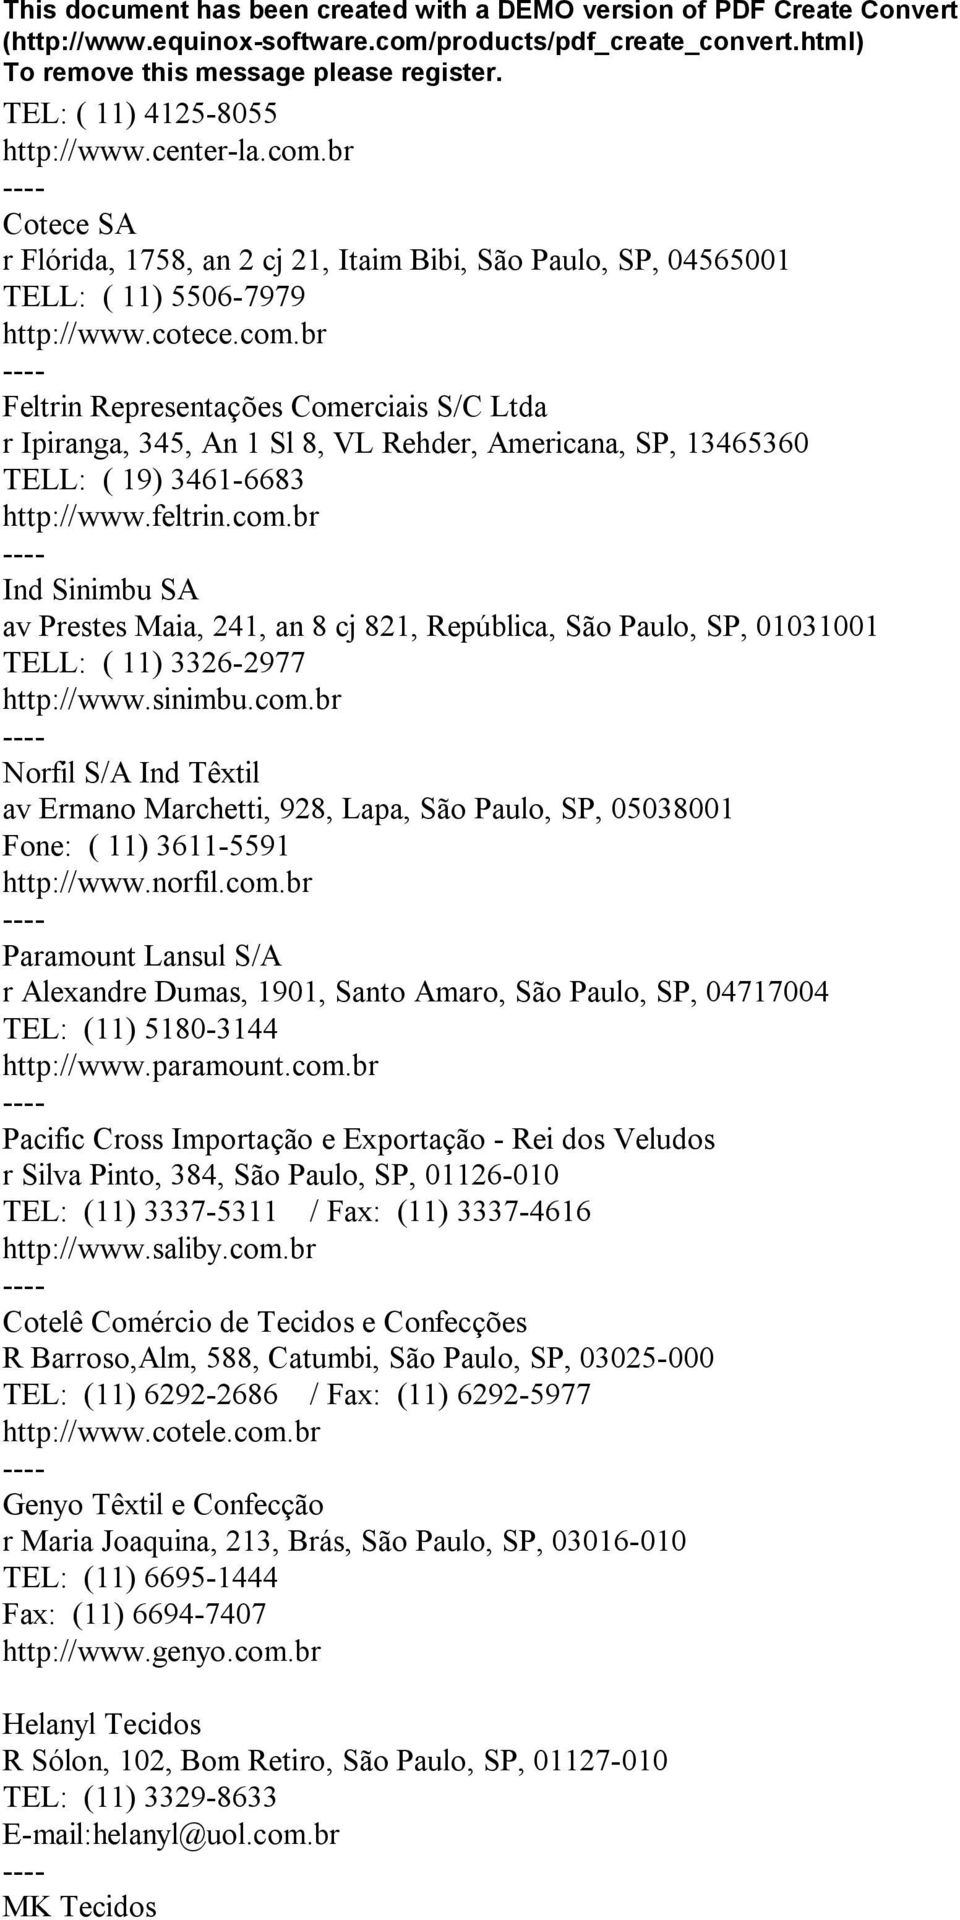 norfil.com.br Paramount Lansul S/A r Alexandre Dumas, 1901, Santo Amaro, São Paulo, SP, 04717004 TEL: (11) 5180-3144 http://www.paramount.com.br Pacific Cross Importação e Exportação - Rei dos Veludos r Silva Pinto, 384, São Paulo, SP, 01126-010 TEL: (11) 3337-5311 / Fax: (11) 3337-4616 http://www.